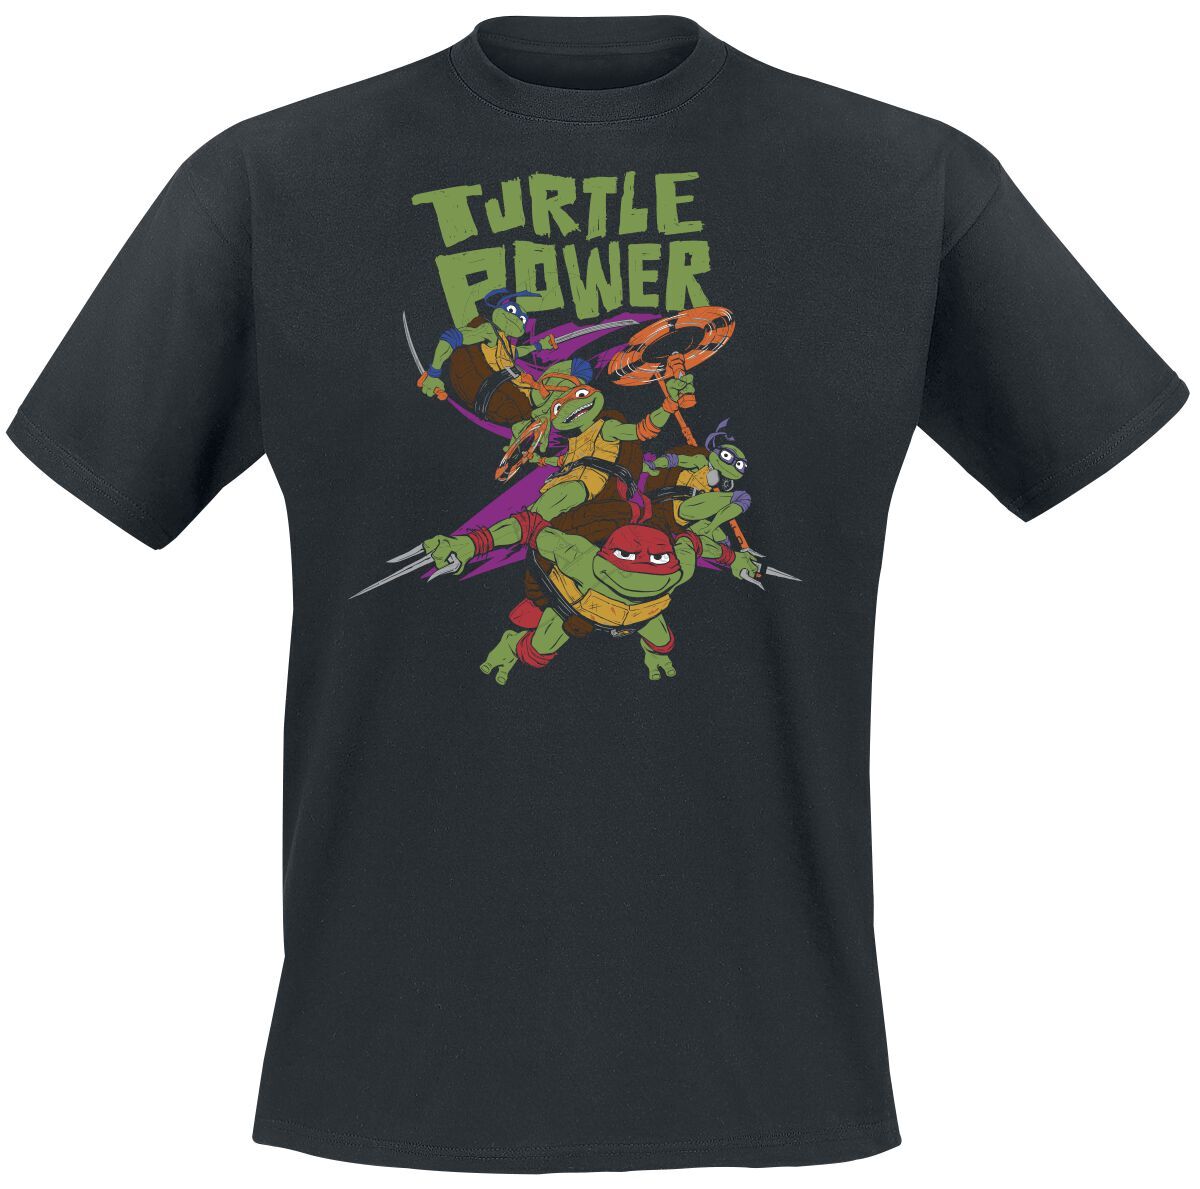 Teenage Mutant Ninja Turtles T-Shirt - Turtle Power - S bis L - für Männer - Größe L - schwarz  - EMP exklusives Merchandise! - Männer - male